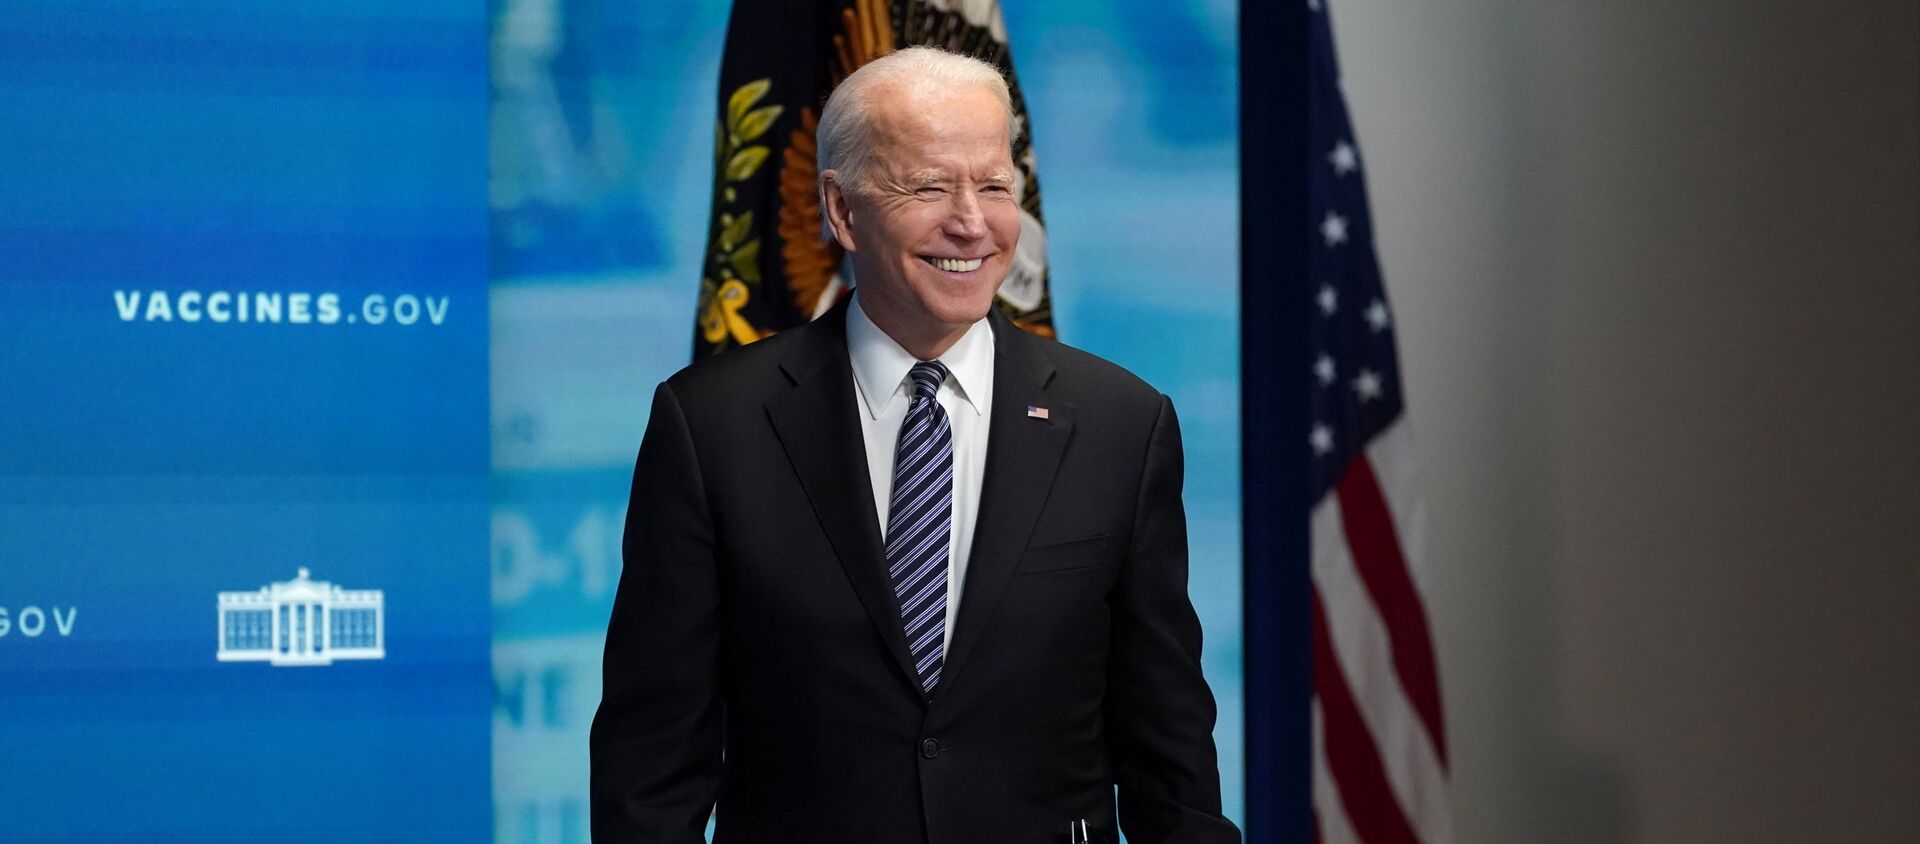 Tổng thống Hoa Kỳ Joe Biden mỉm cười khi trả lời câu hỏi từ một phóng viên sau khi phát biểu về chương trình tiêm chủng và ứng phó với COVID-19 tại Nhà Trắng ở Washington, Hoa Kỳ, ngày 12 tháng 5 năm 2021 - Sputnik Việt Nam, 1920, 13.05.2021